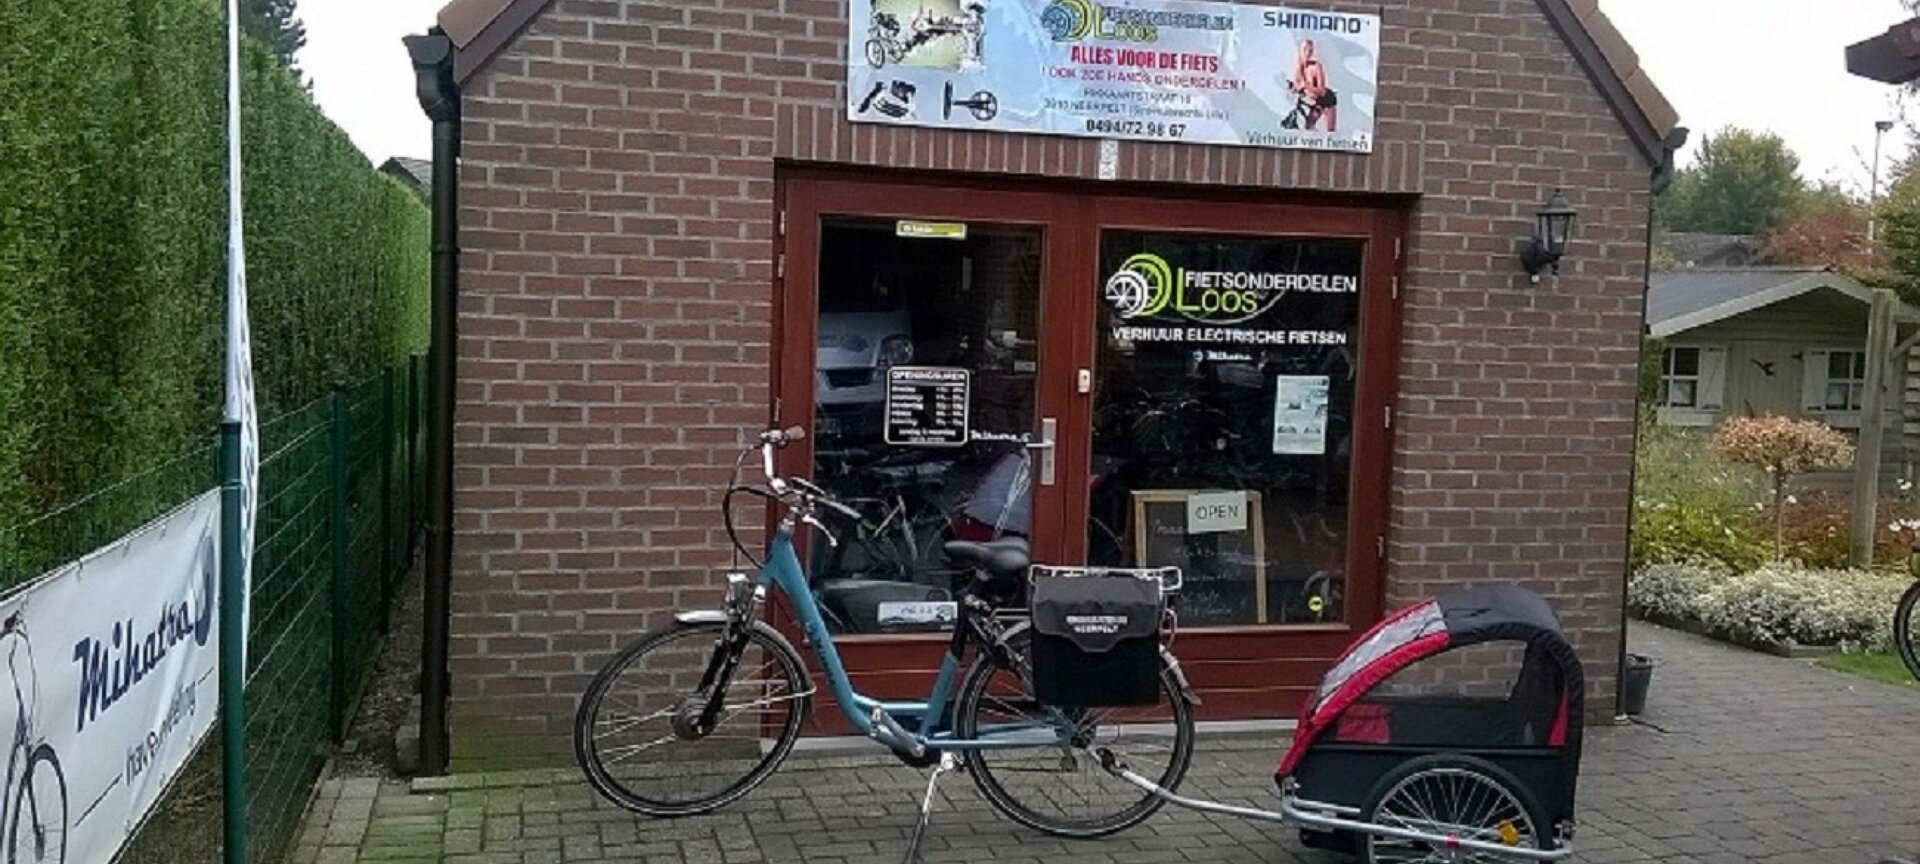 Fietsverhuur Loos (Elektrische fietsen) - Onze locatie